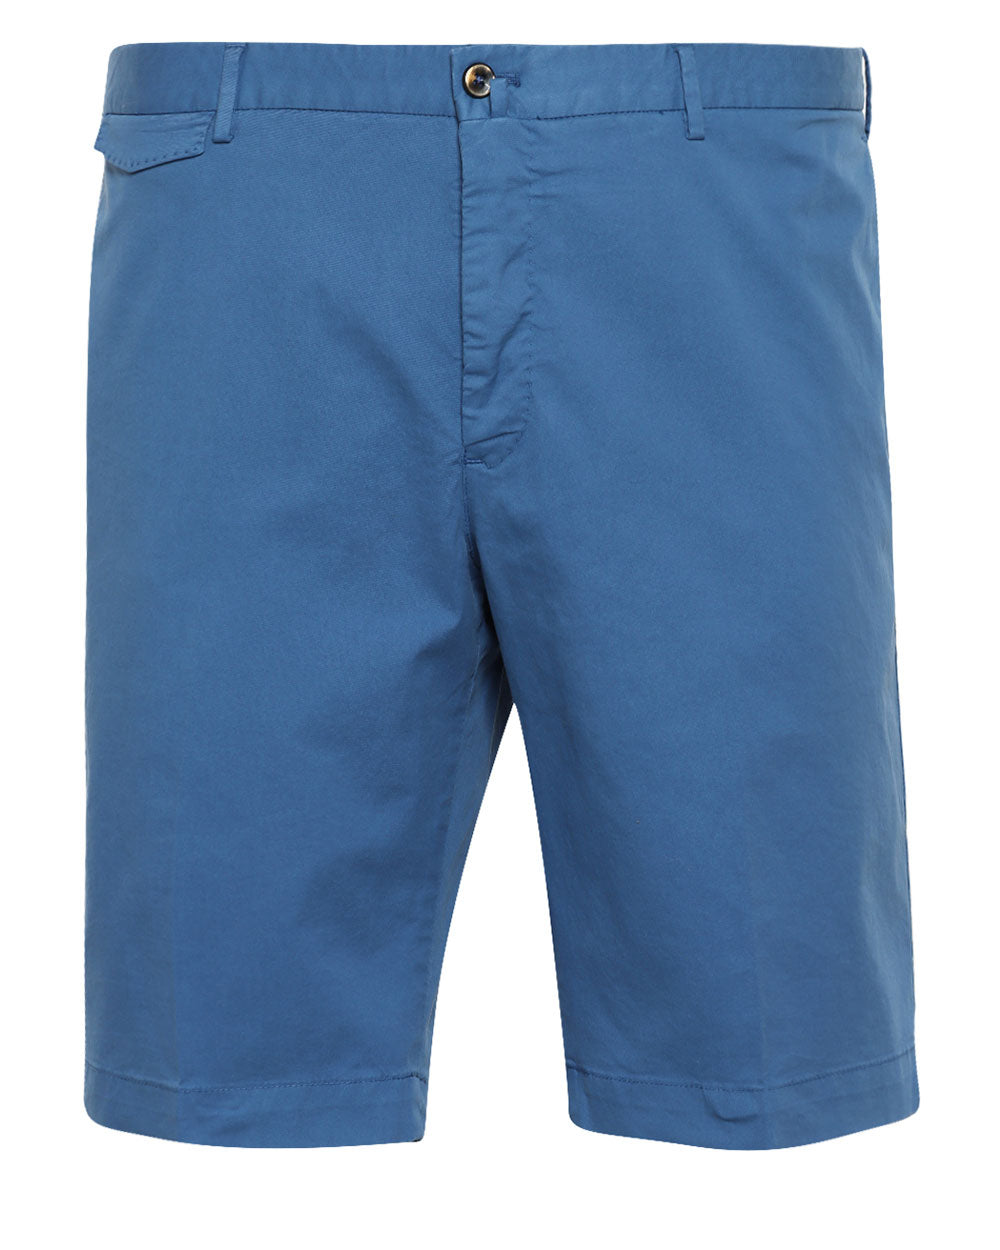 Blue Cotton Blend Stretch Bermuda Short